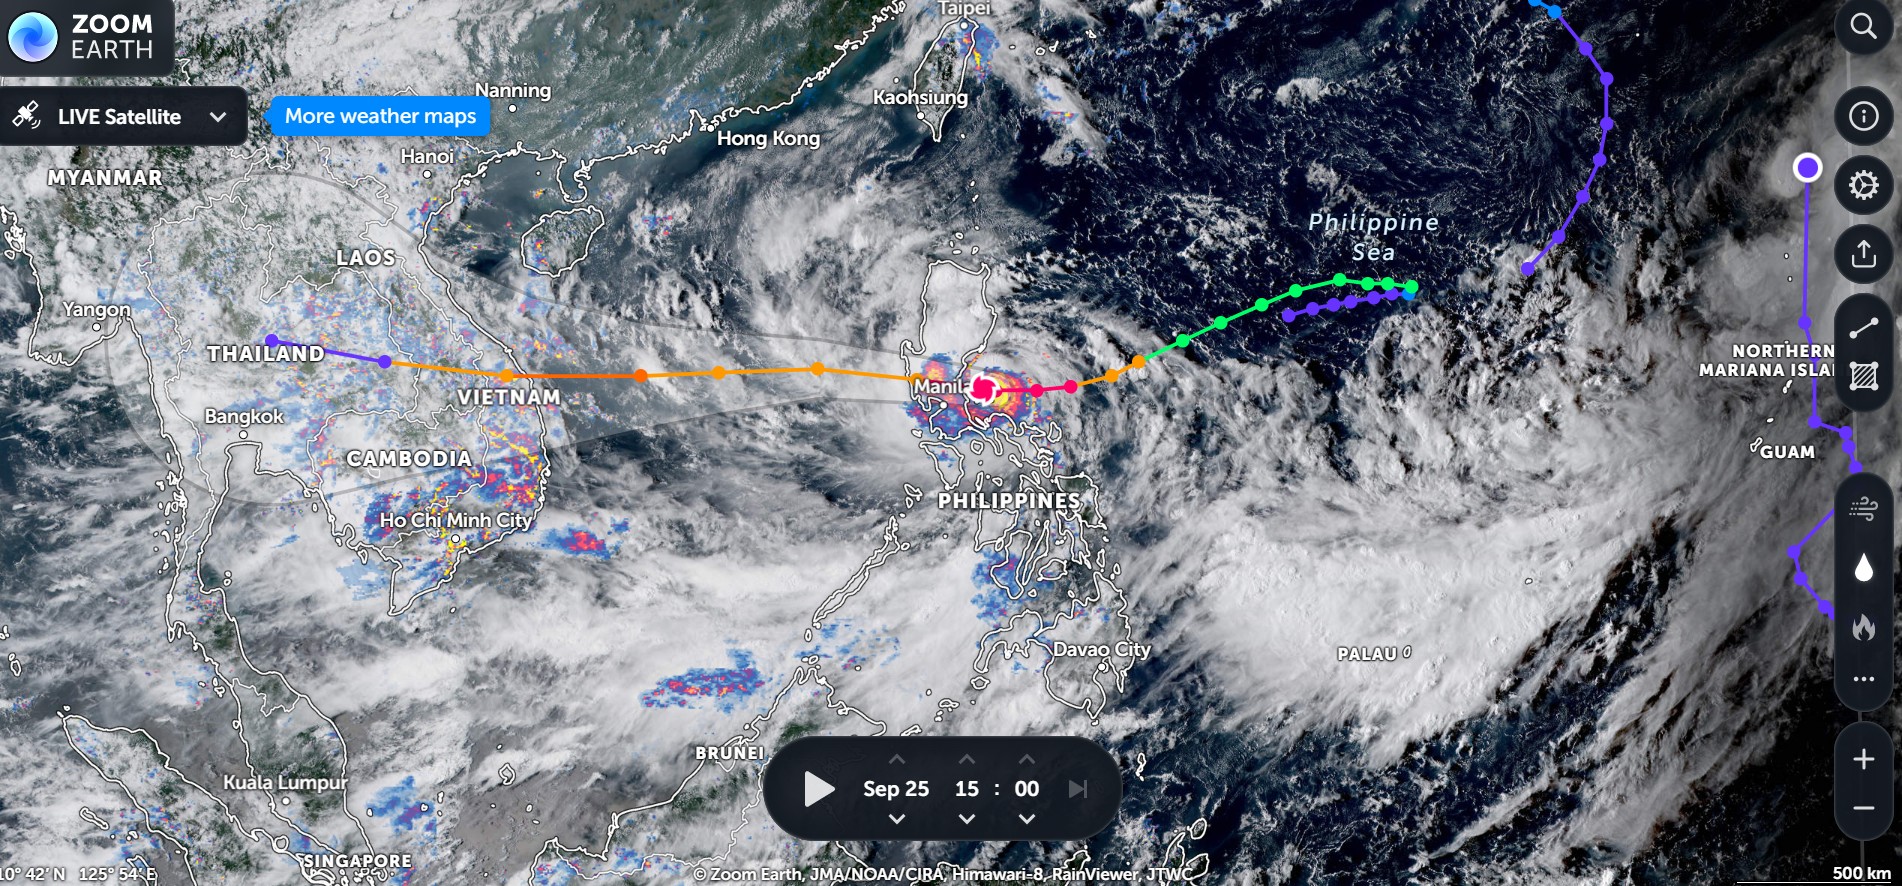 Vị trí siêu bão Noru trên bản đồ vệ tinh vào lúc 15 giờ chiều ngày 25/9 (ảnh: Zoom Earth)